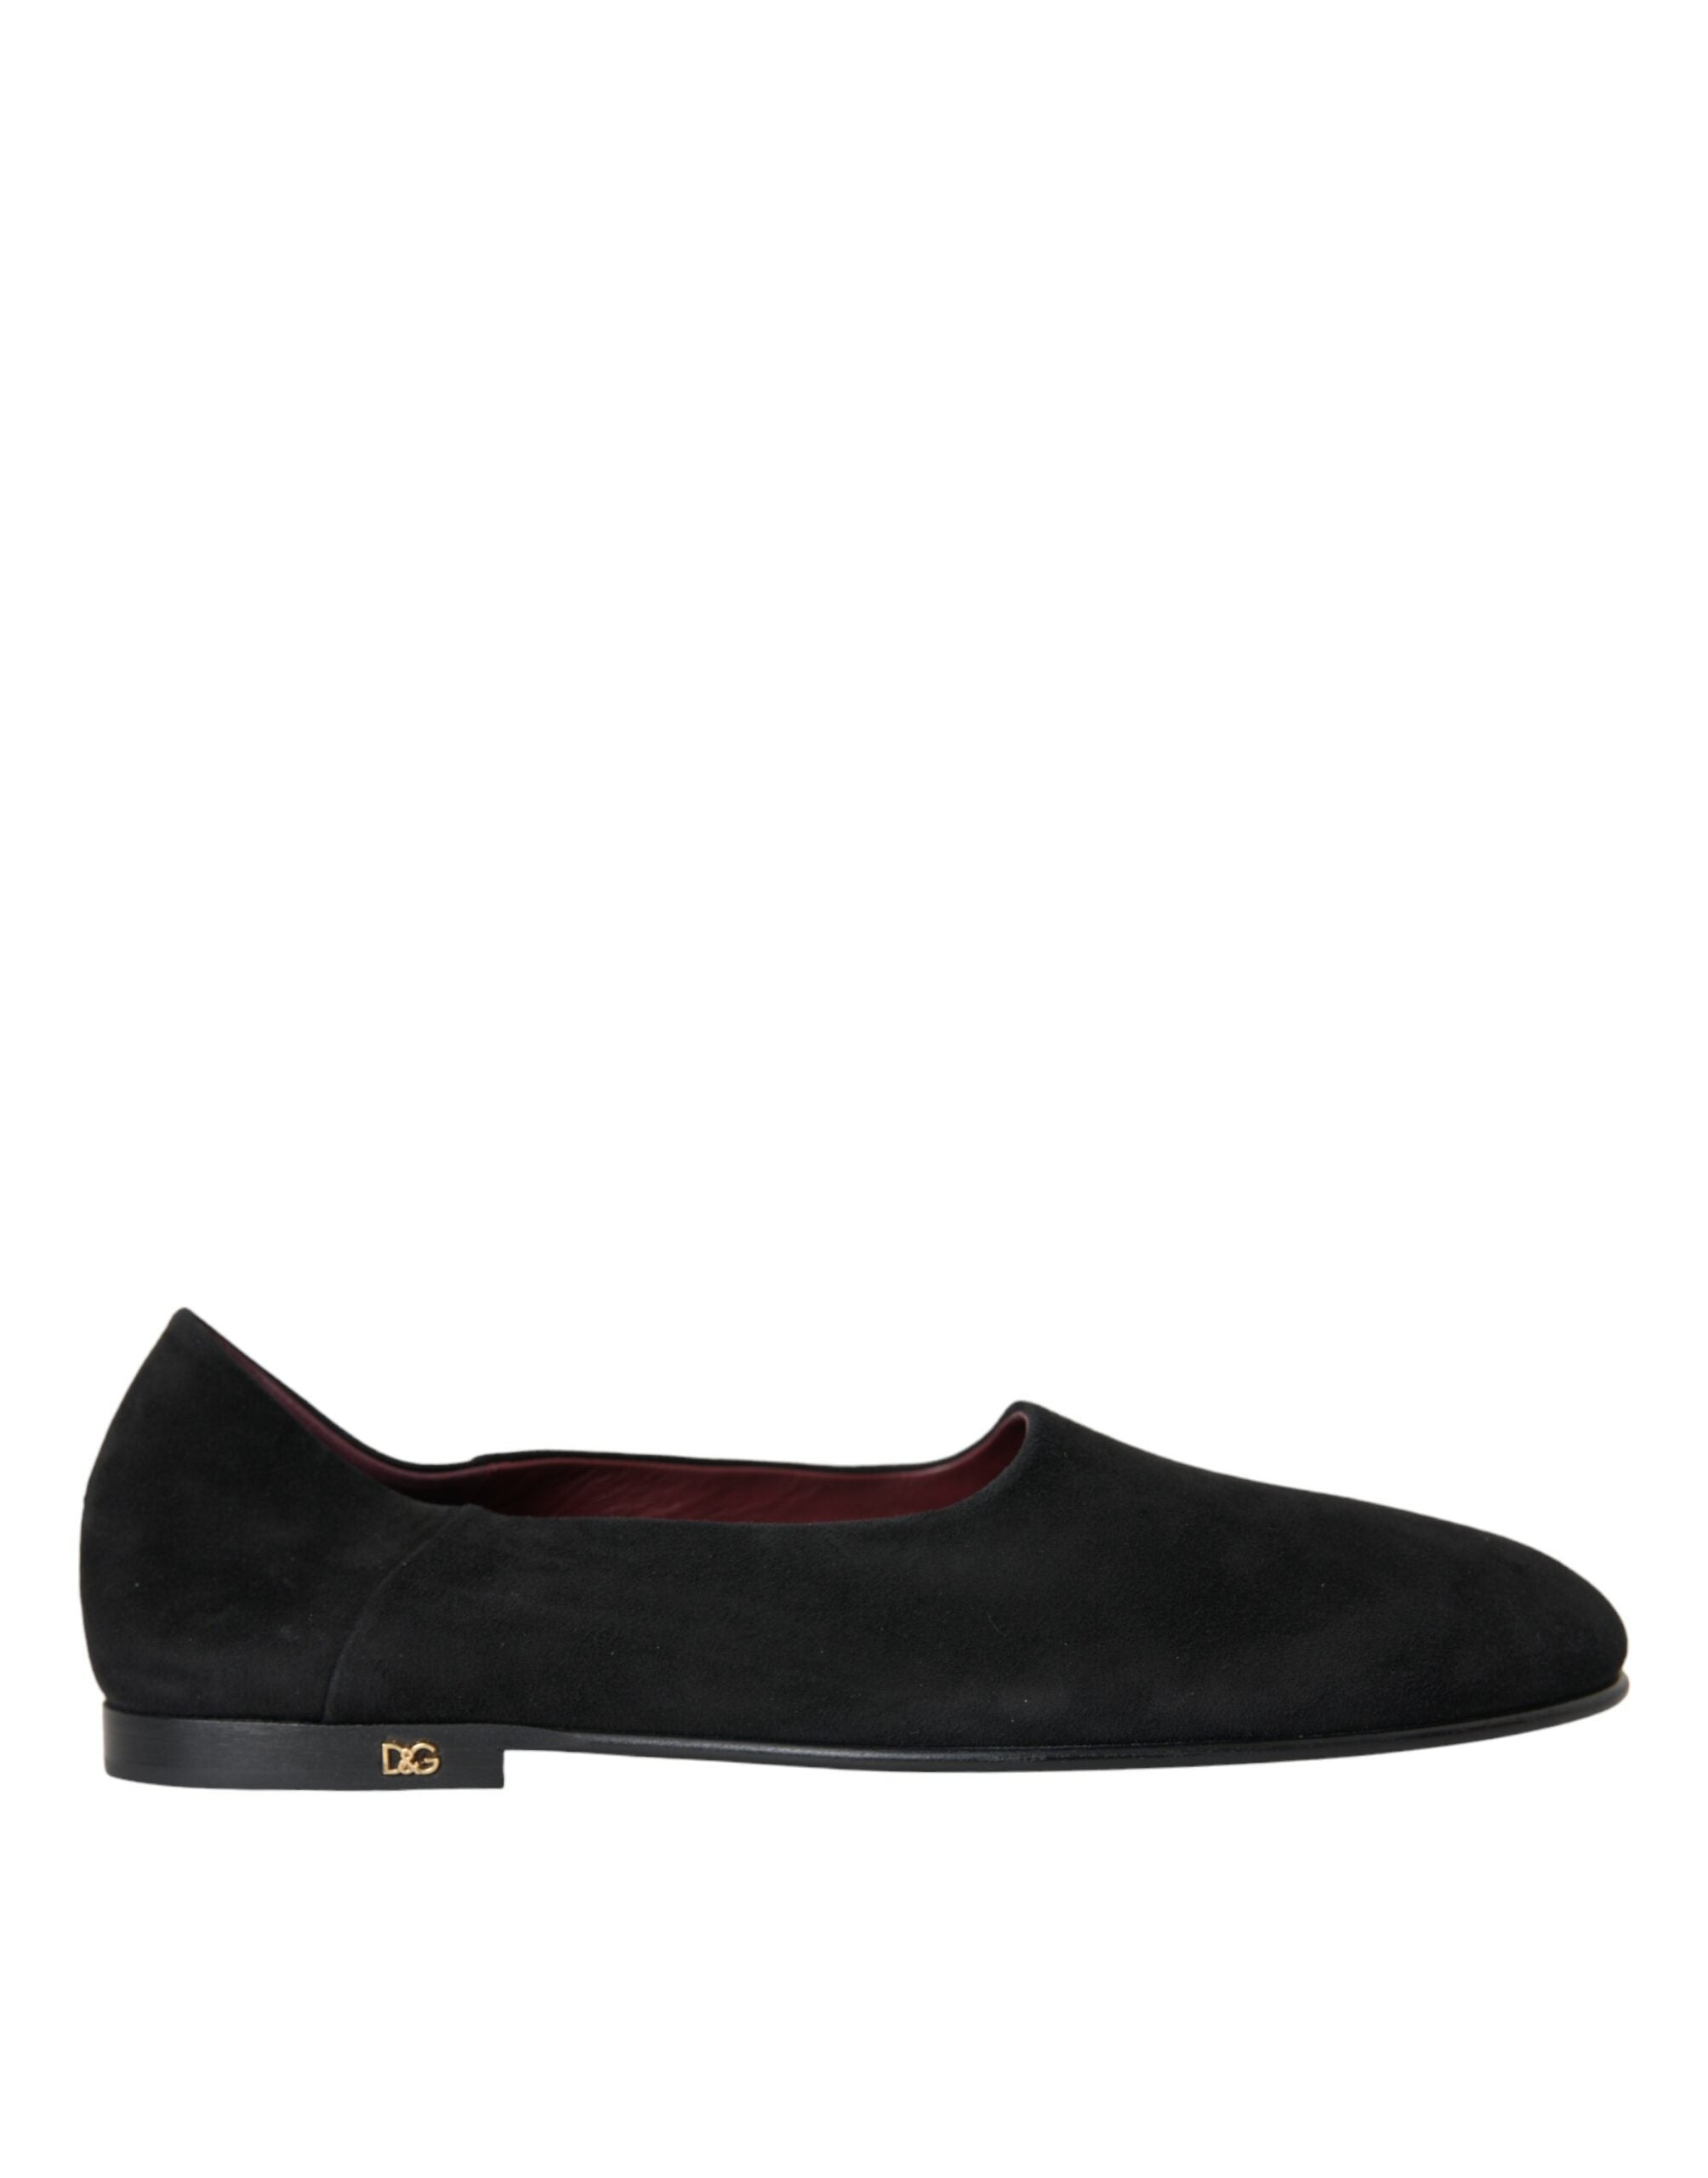 Dolce & Gabbana Black Suede Loafers Formal Dress Slip On Men's Shoes